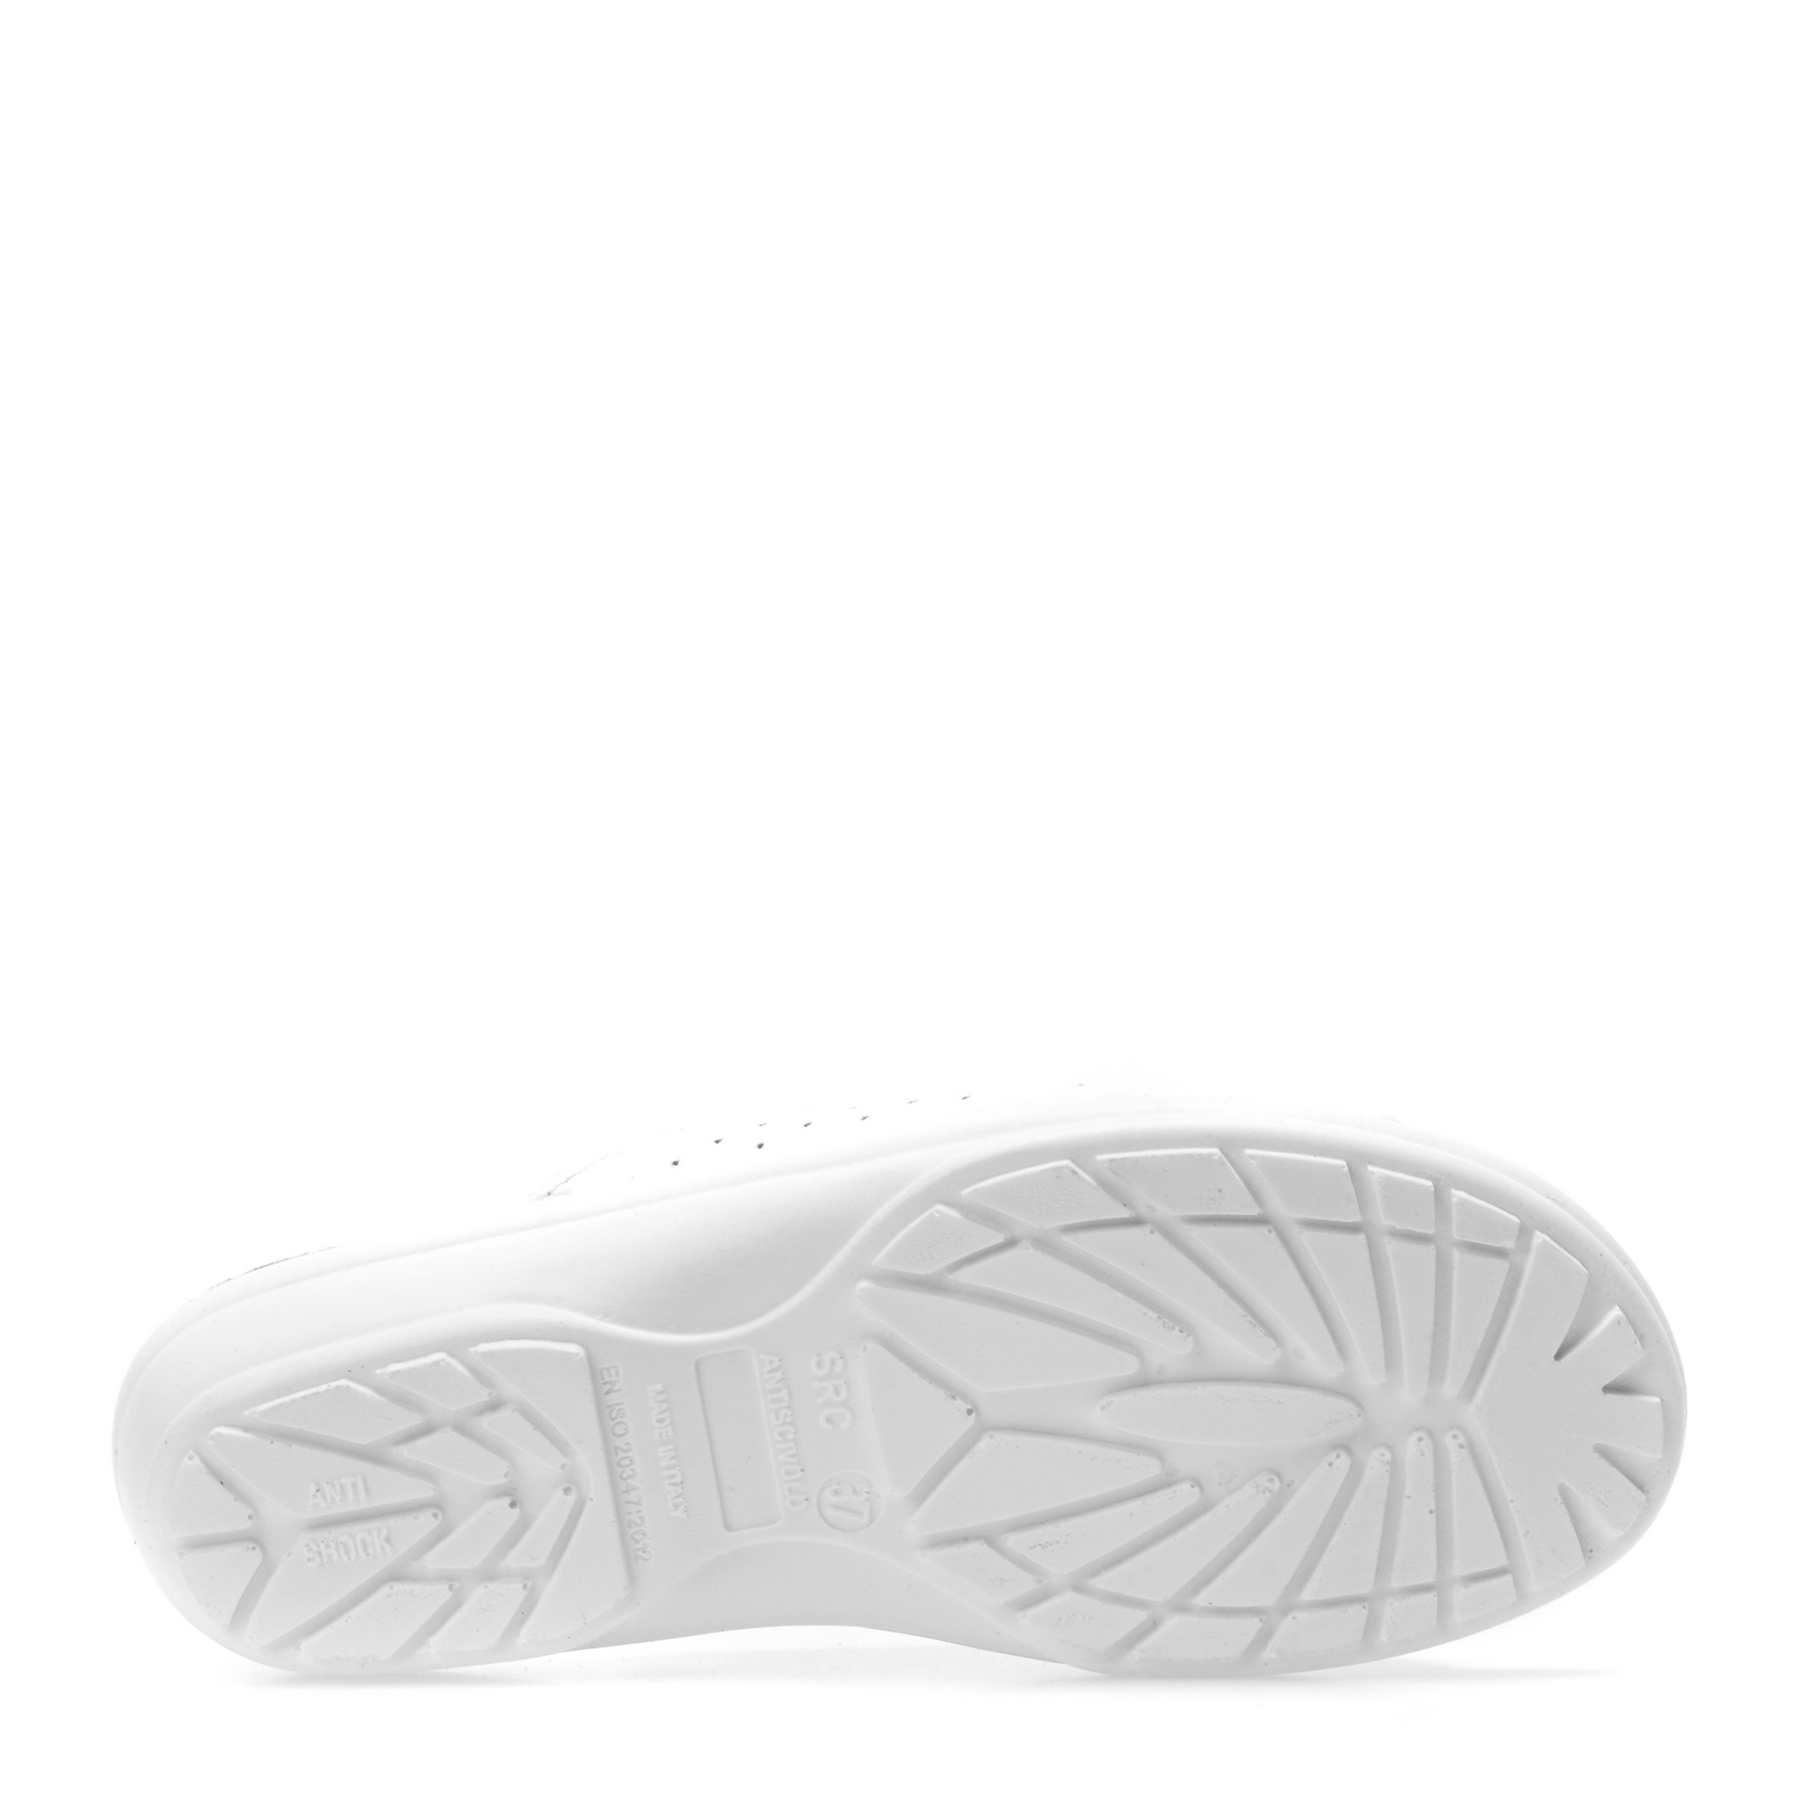 Papuci medicinali PLANTARES albi, 1464, din piele naturala